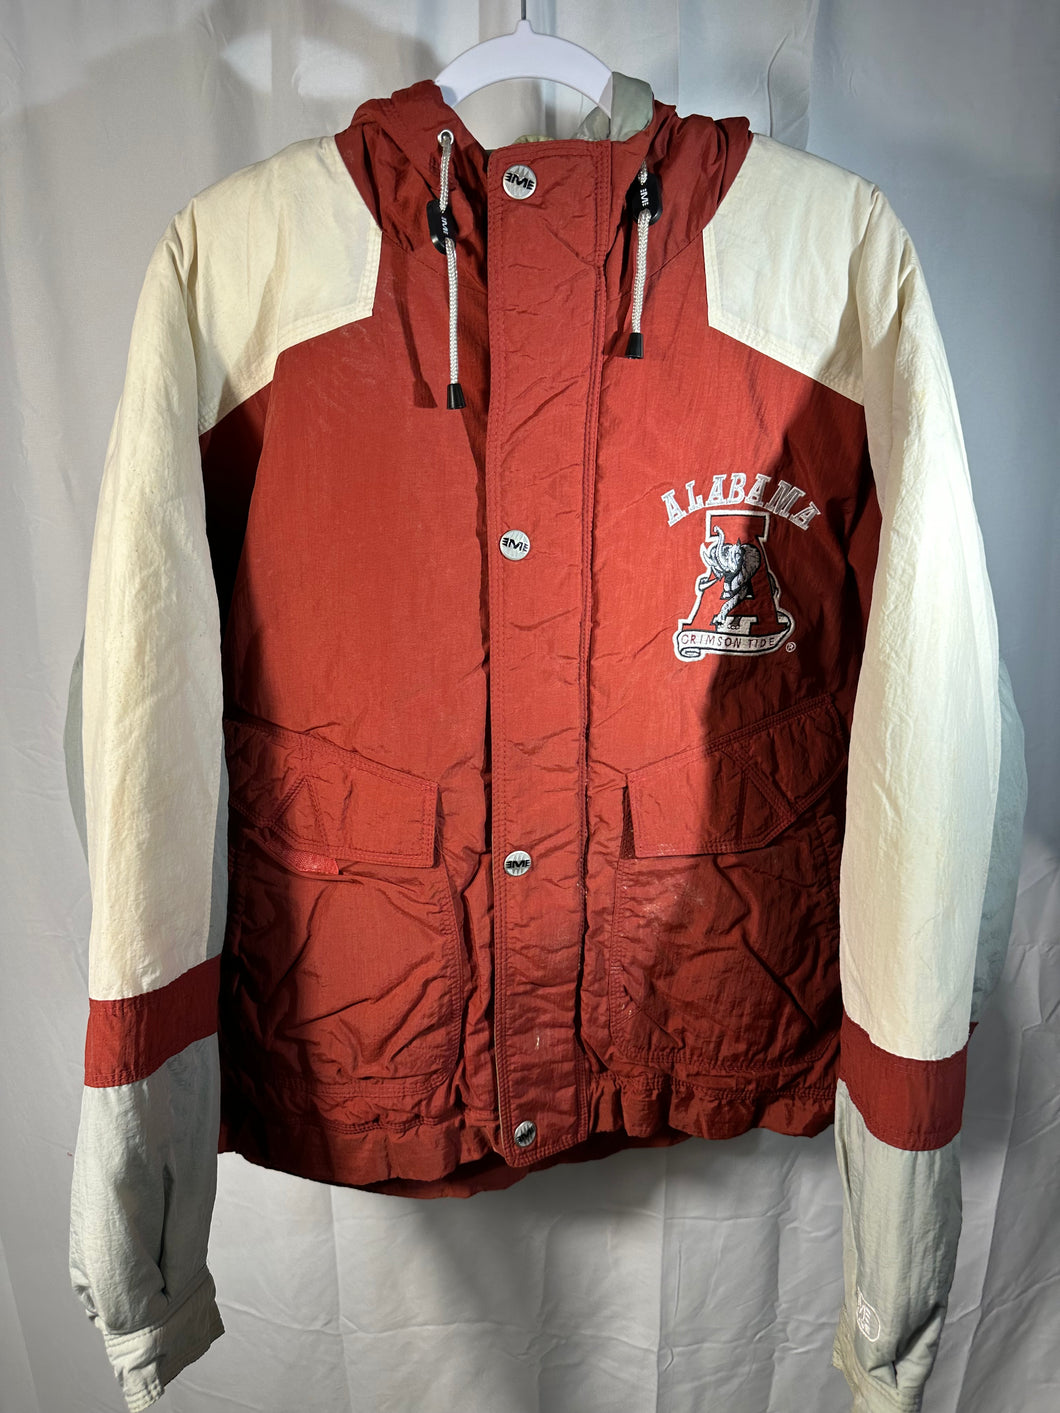 Vintage Alabama X Mirage Puffer Jacket Large